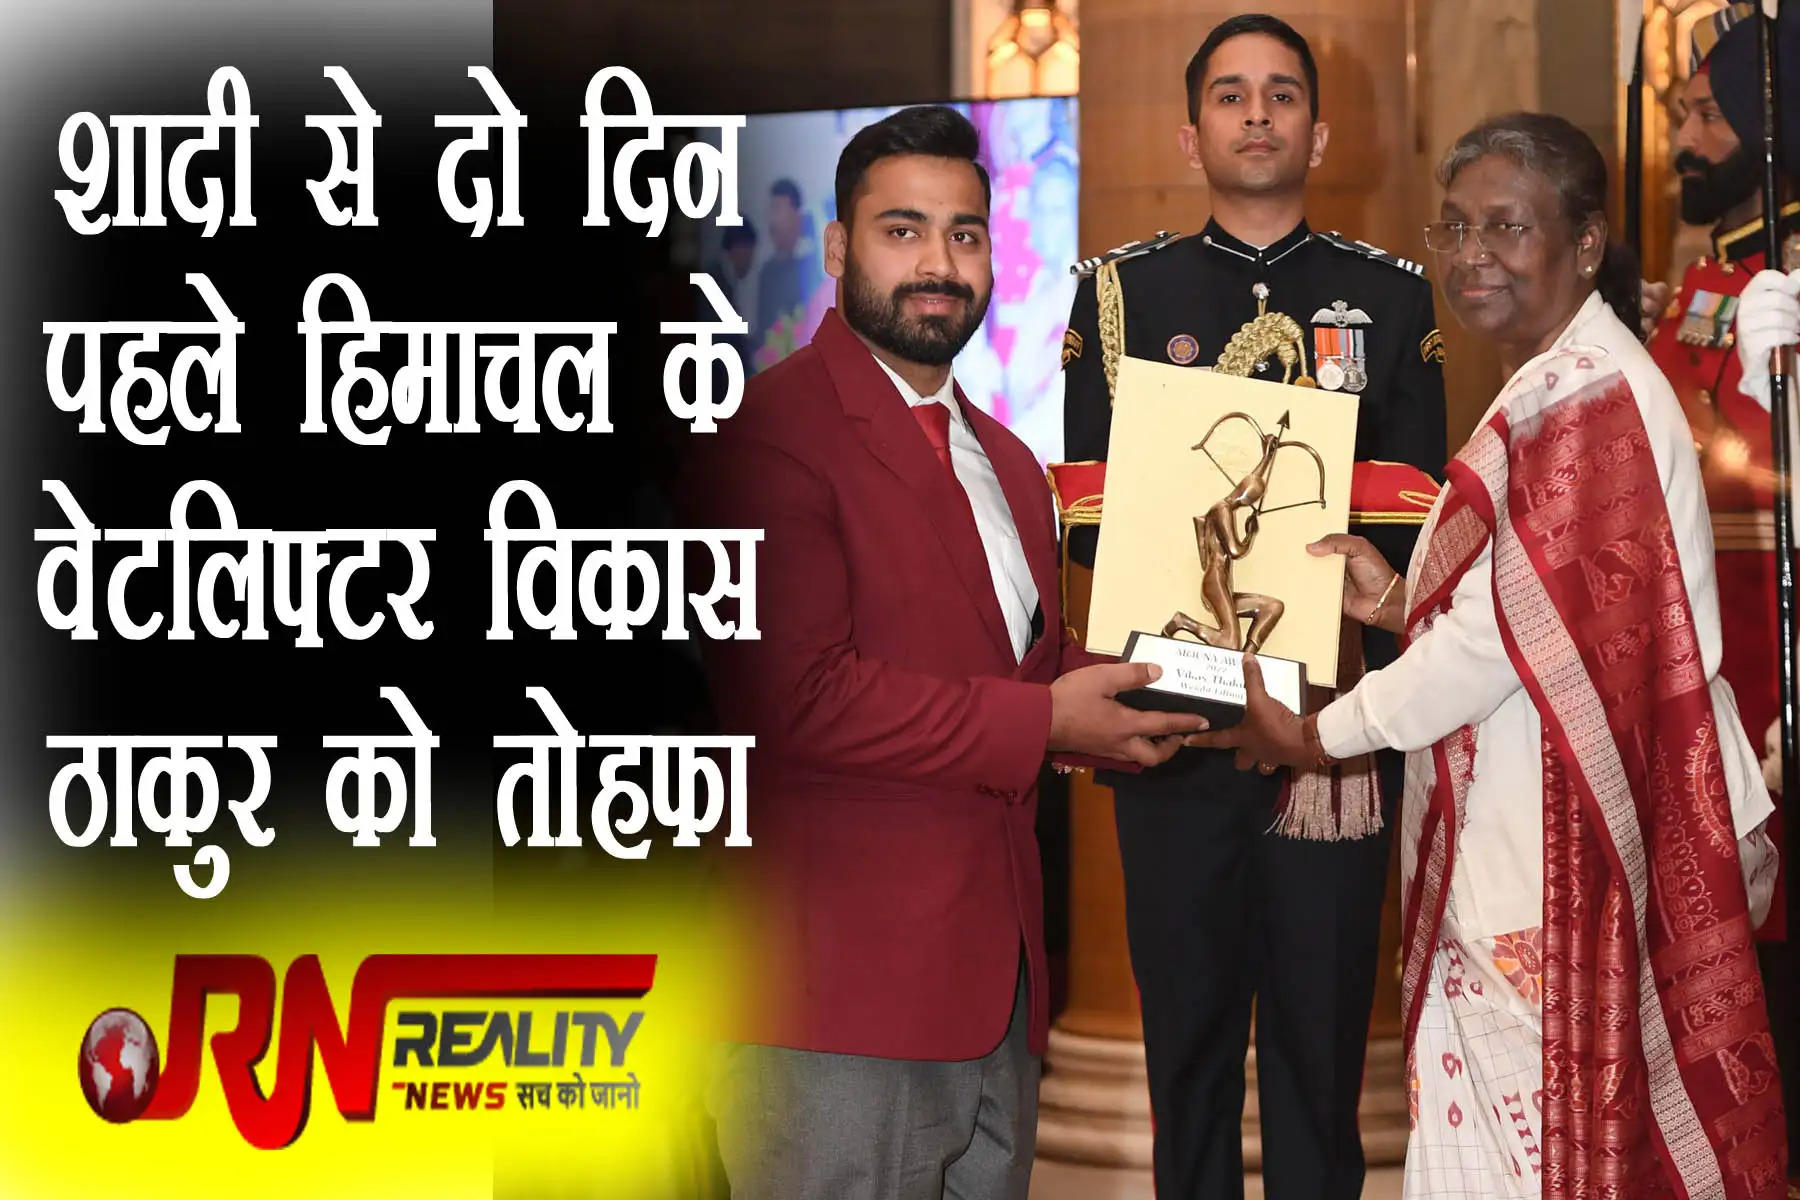 Arjuna Award to Vikas Thakur for his achievements in Weight-Lifting    शादी से दो दिन पहले हिमाचल के  जिला हमीरपुर के  वेटलिफ्टर विकास ठाकुर को अर्जुन अवार्ड का तोहफा मिला है। नई दिल्ली में राष्ट्रपति द्रौपदी मुर्मू ने उन्हें इस पुरस्कार से सम्मानित किया। भारोत्तोलन में हिमाचल से अर्जुन अवार्ड हासिल करने वाले विकास ठाकुर पहले अंतरराष्ट्रीय खिलाड़ी बन गए हैं। कॉमनवेल्थ गेम्स में उत्कृष्ट प्रदर्शन कर पदकों की हैट्रिक लगाने का इनाम विकास को मिला है। वह 2 दिसंबर को विवाह बंधन में बंधने जा रहे हैं।